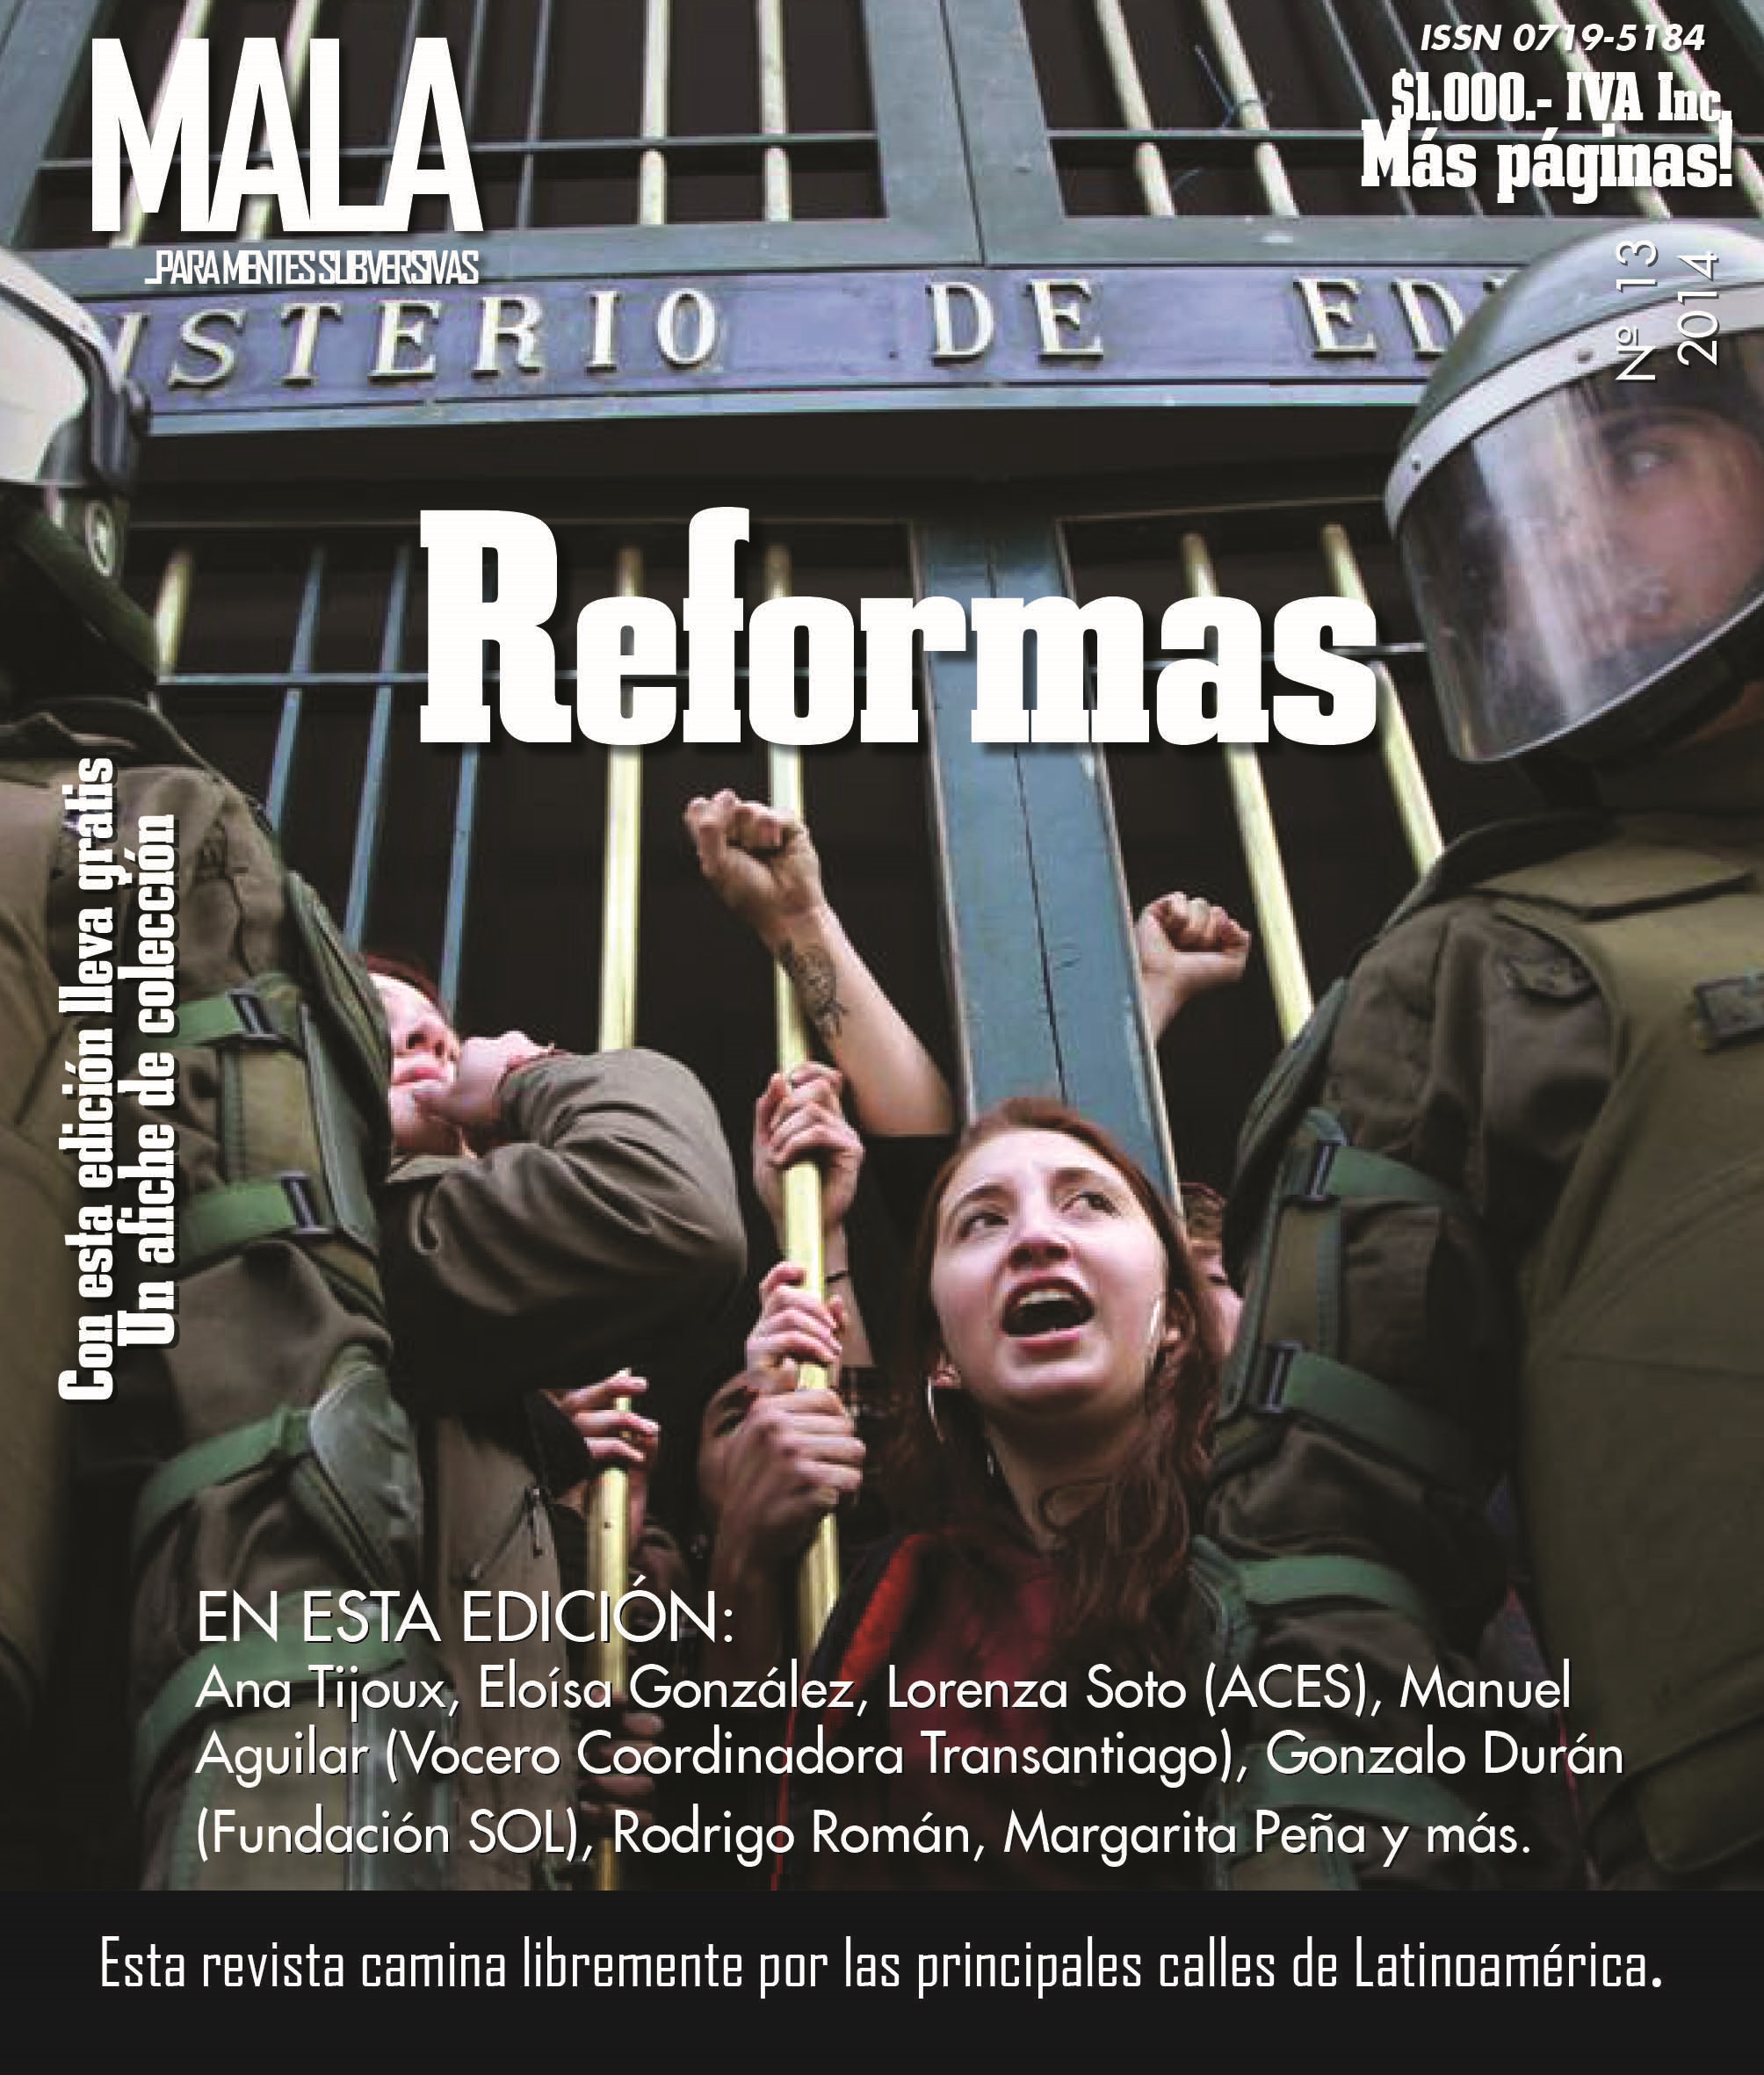 Mala Magazine es retirada de la FILSA por acusación de plagio